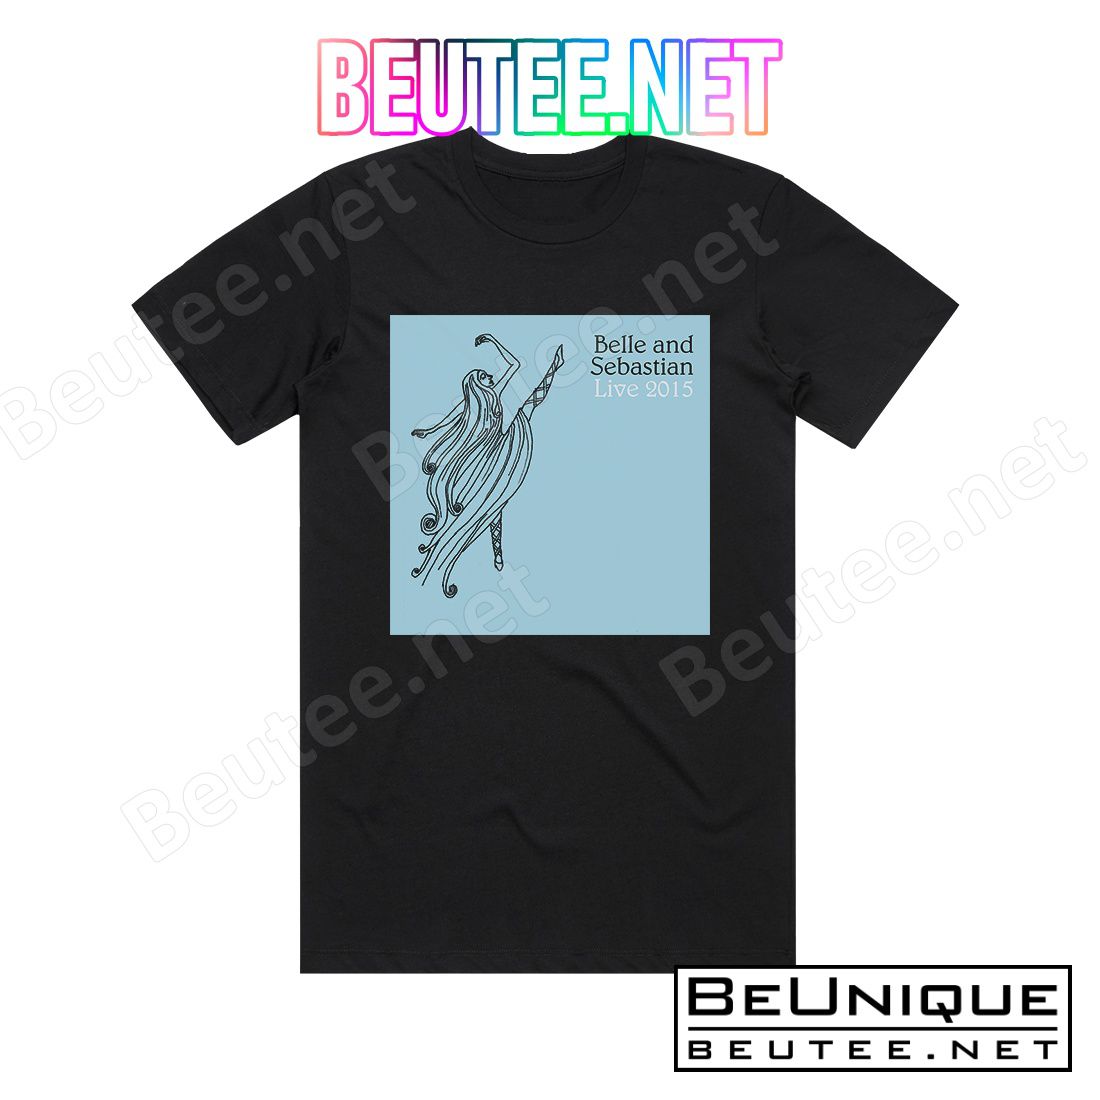 Belle and Sebastian Live 2015 Album Cover T-Shirt